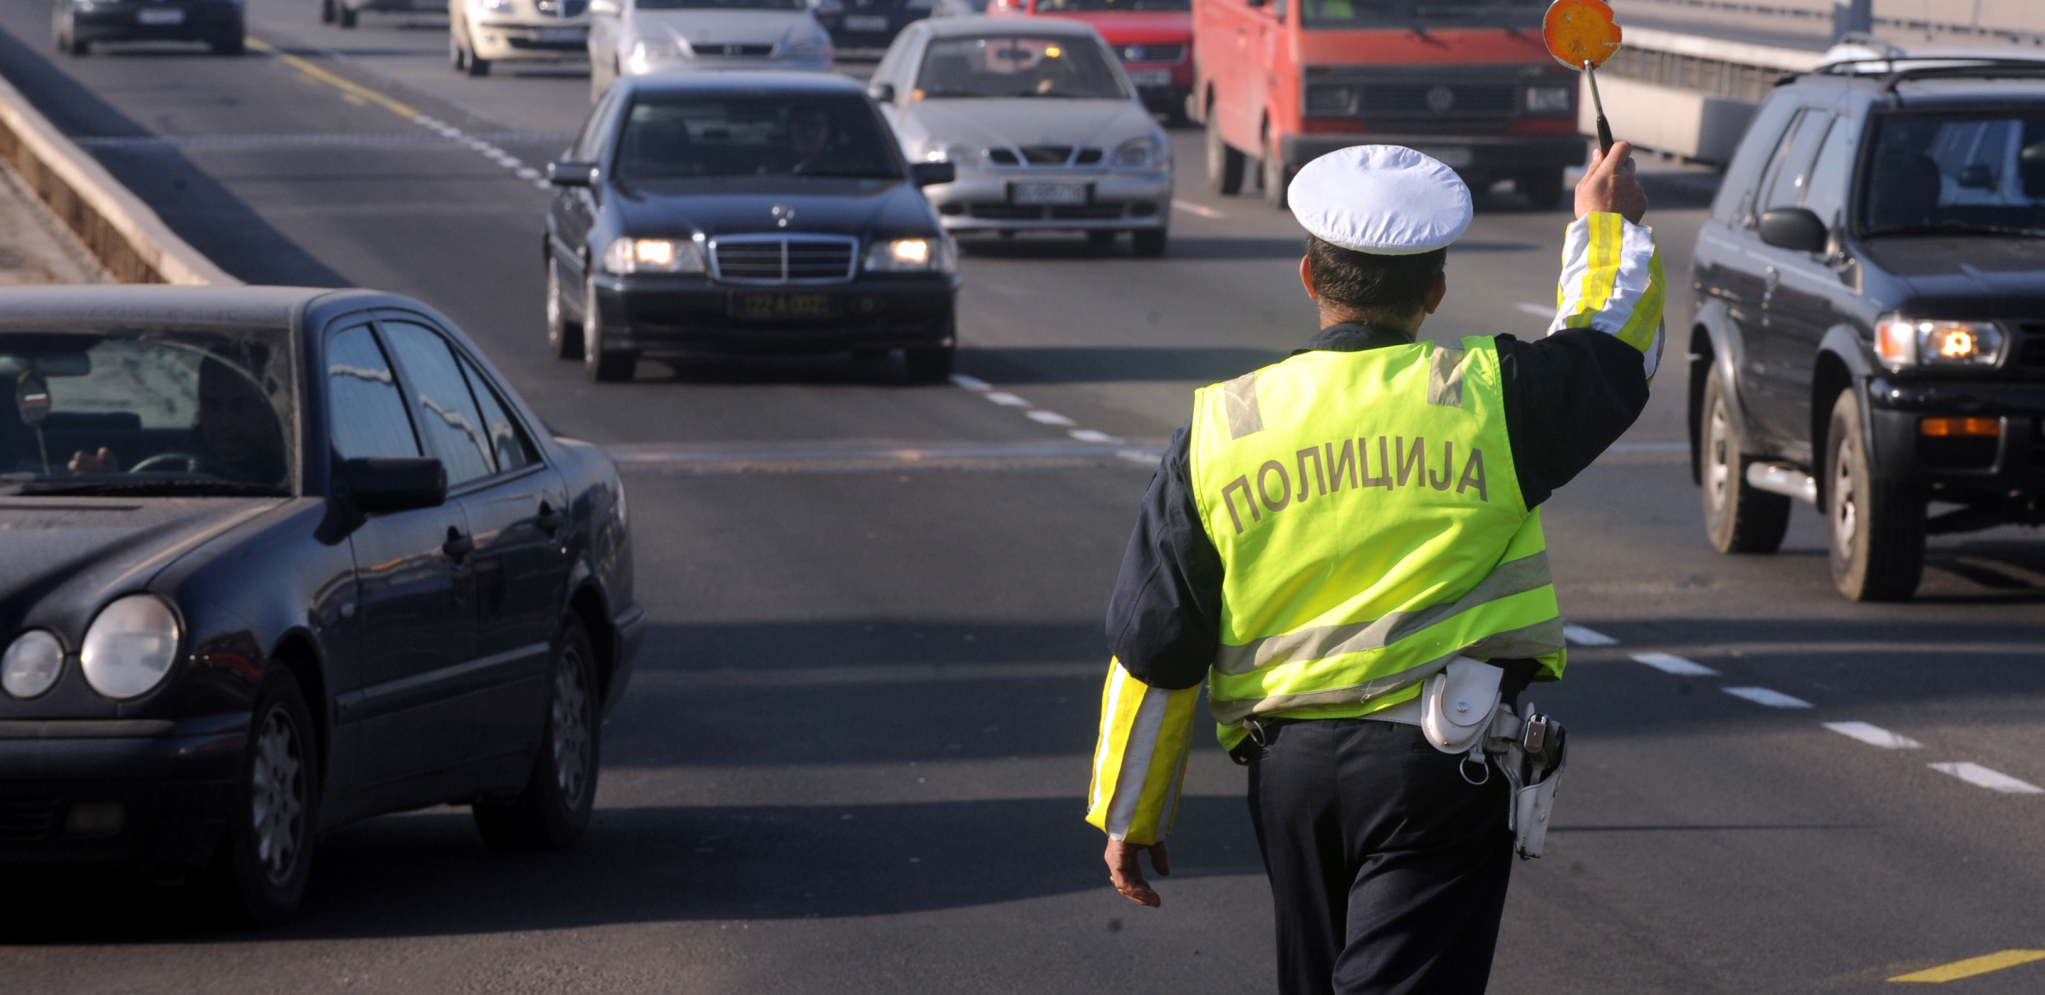 POJAČANA KONTROLA SAOBRAĆAJA Počinje velika međunarodna akcija saobraćajne policije!